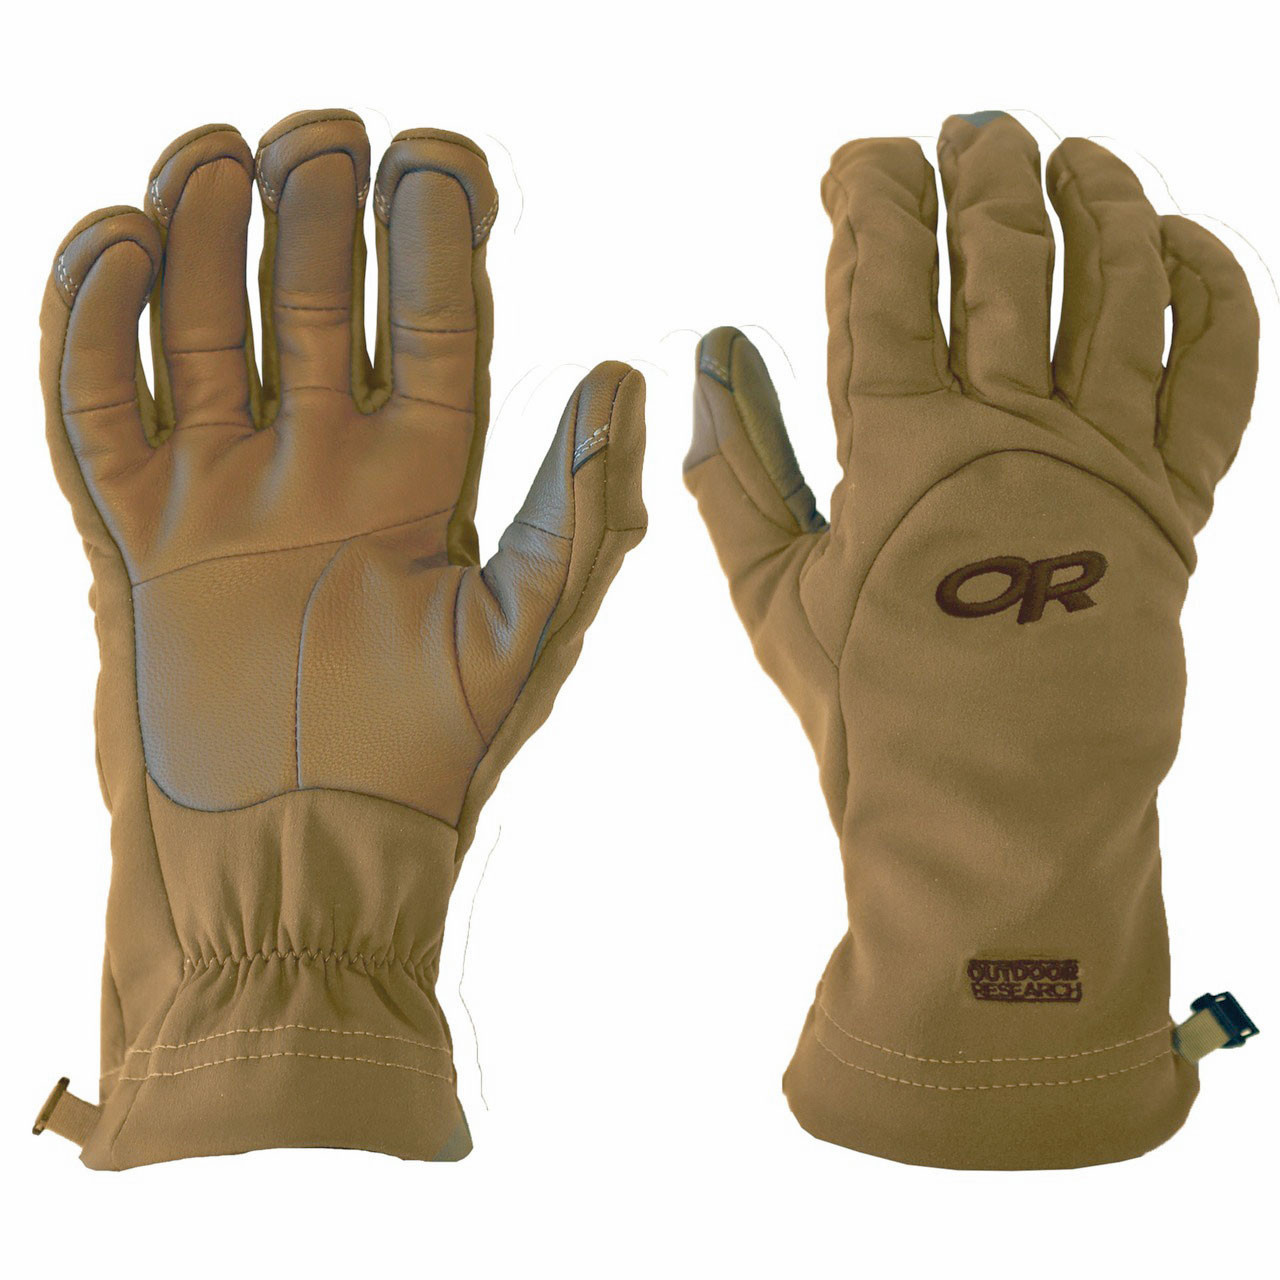 or gloves